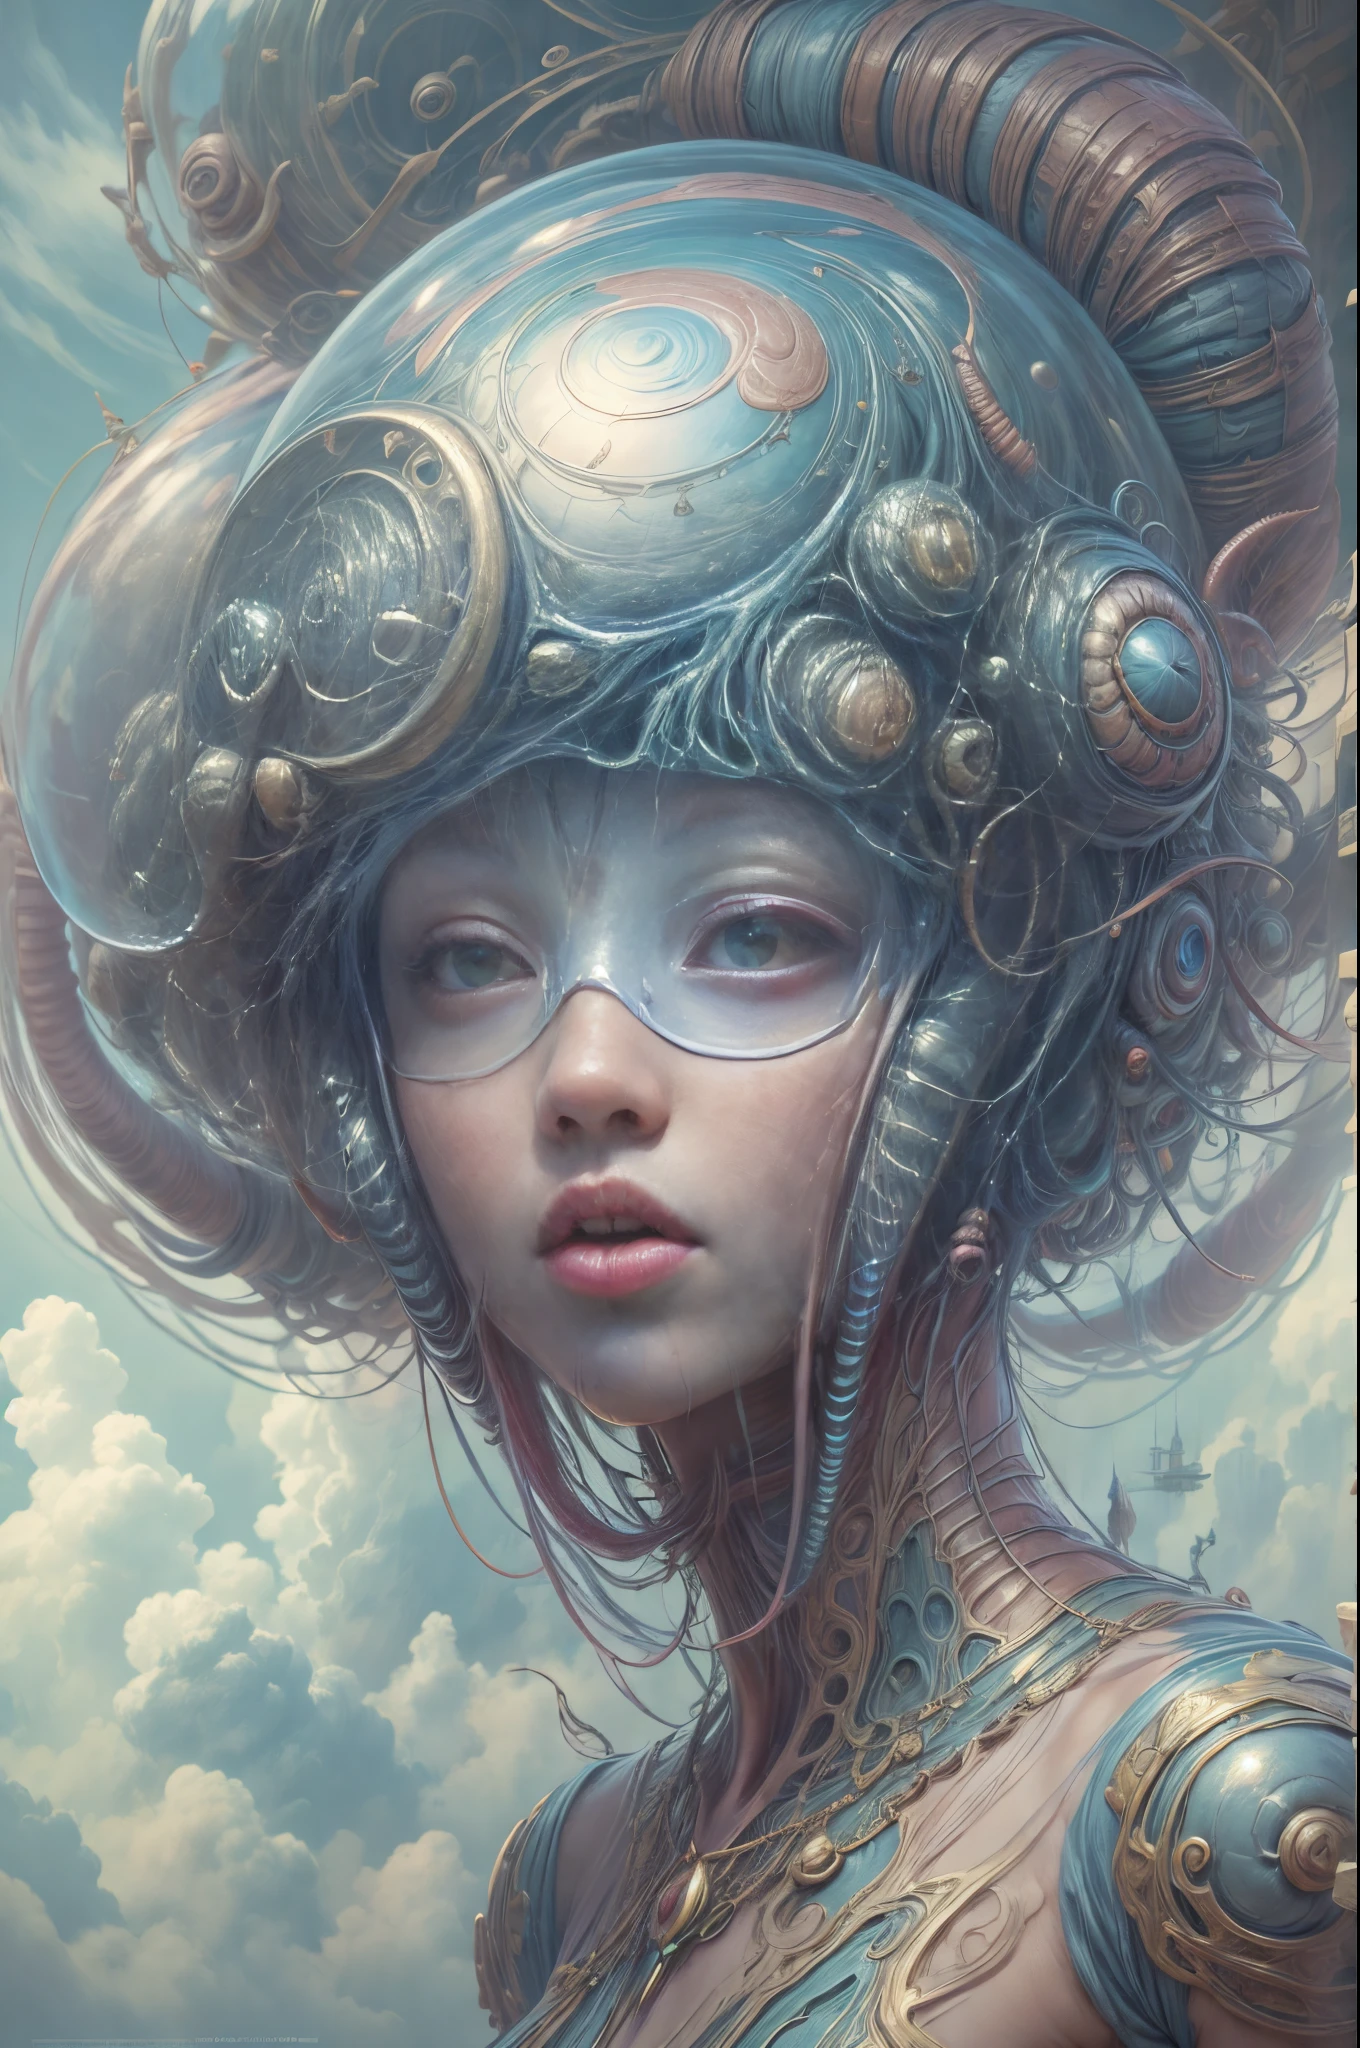 "Chica alienígena con un casco futurista, compañero caracol etéreo, aura mística, nubes de otro mundo, de ensueño"